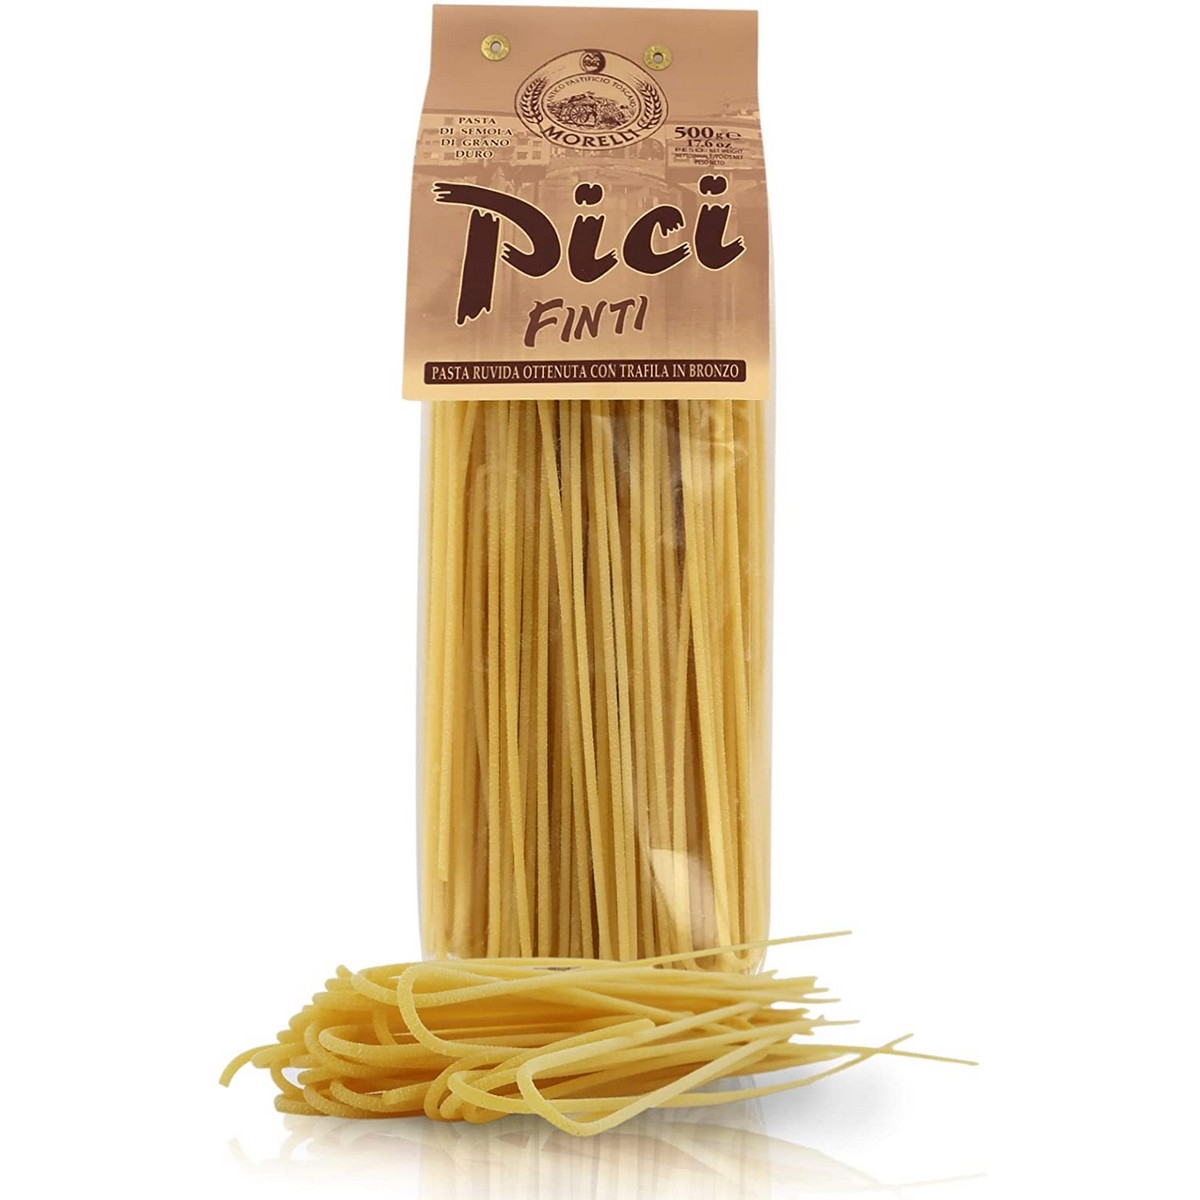 Antico Pastificio Morelli - Regional Specialities - Pici Dritti - 500 g